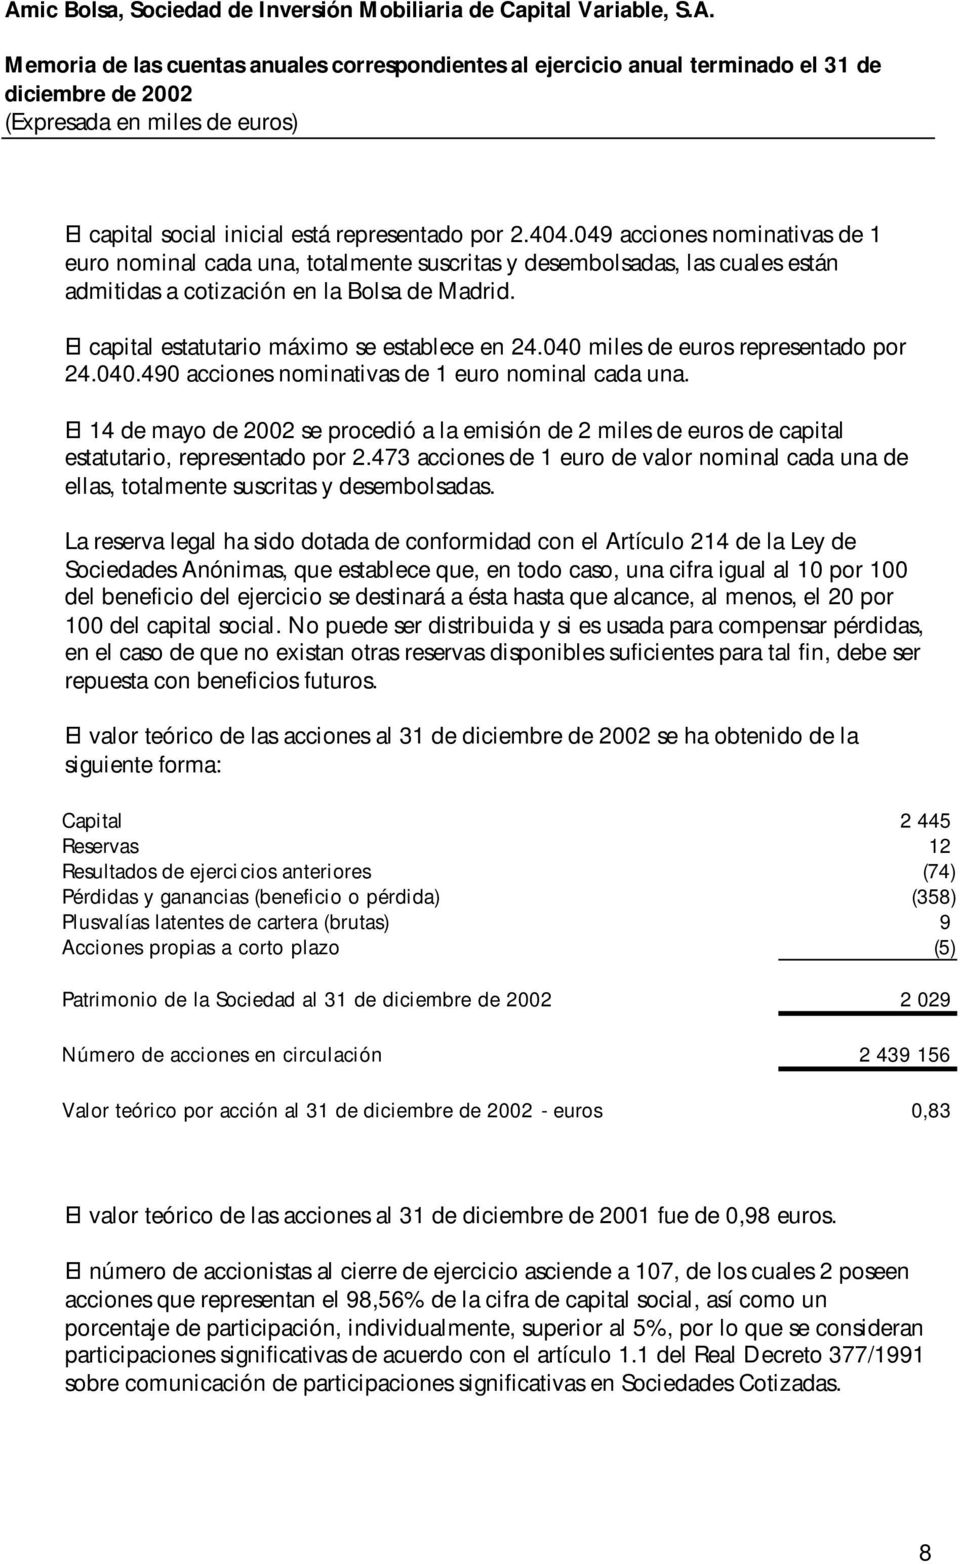 El capital estatutario máximo se establece en 24.040 miles de euros representado por 24.040.490 acciones nominativas de 1 euro nominal cada una.